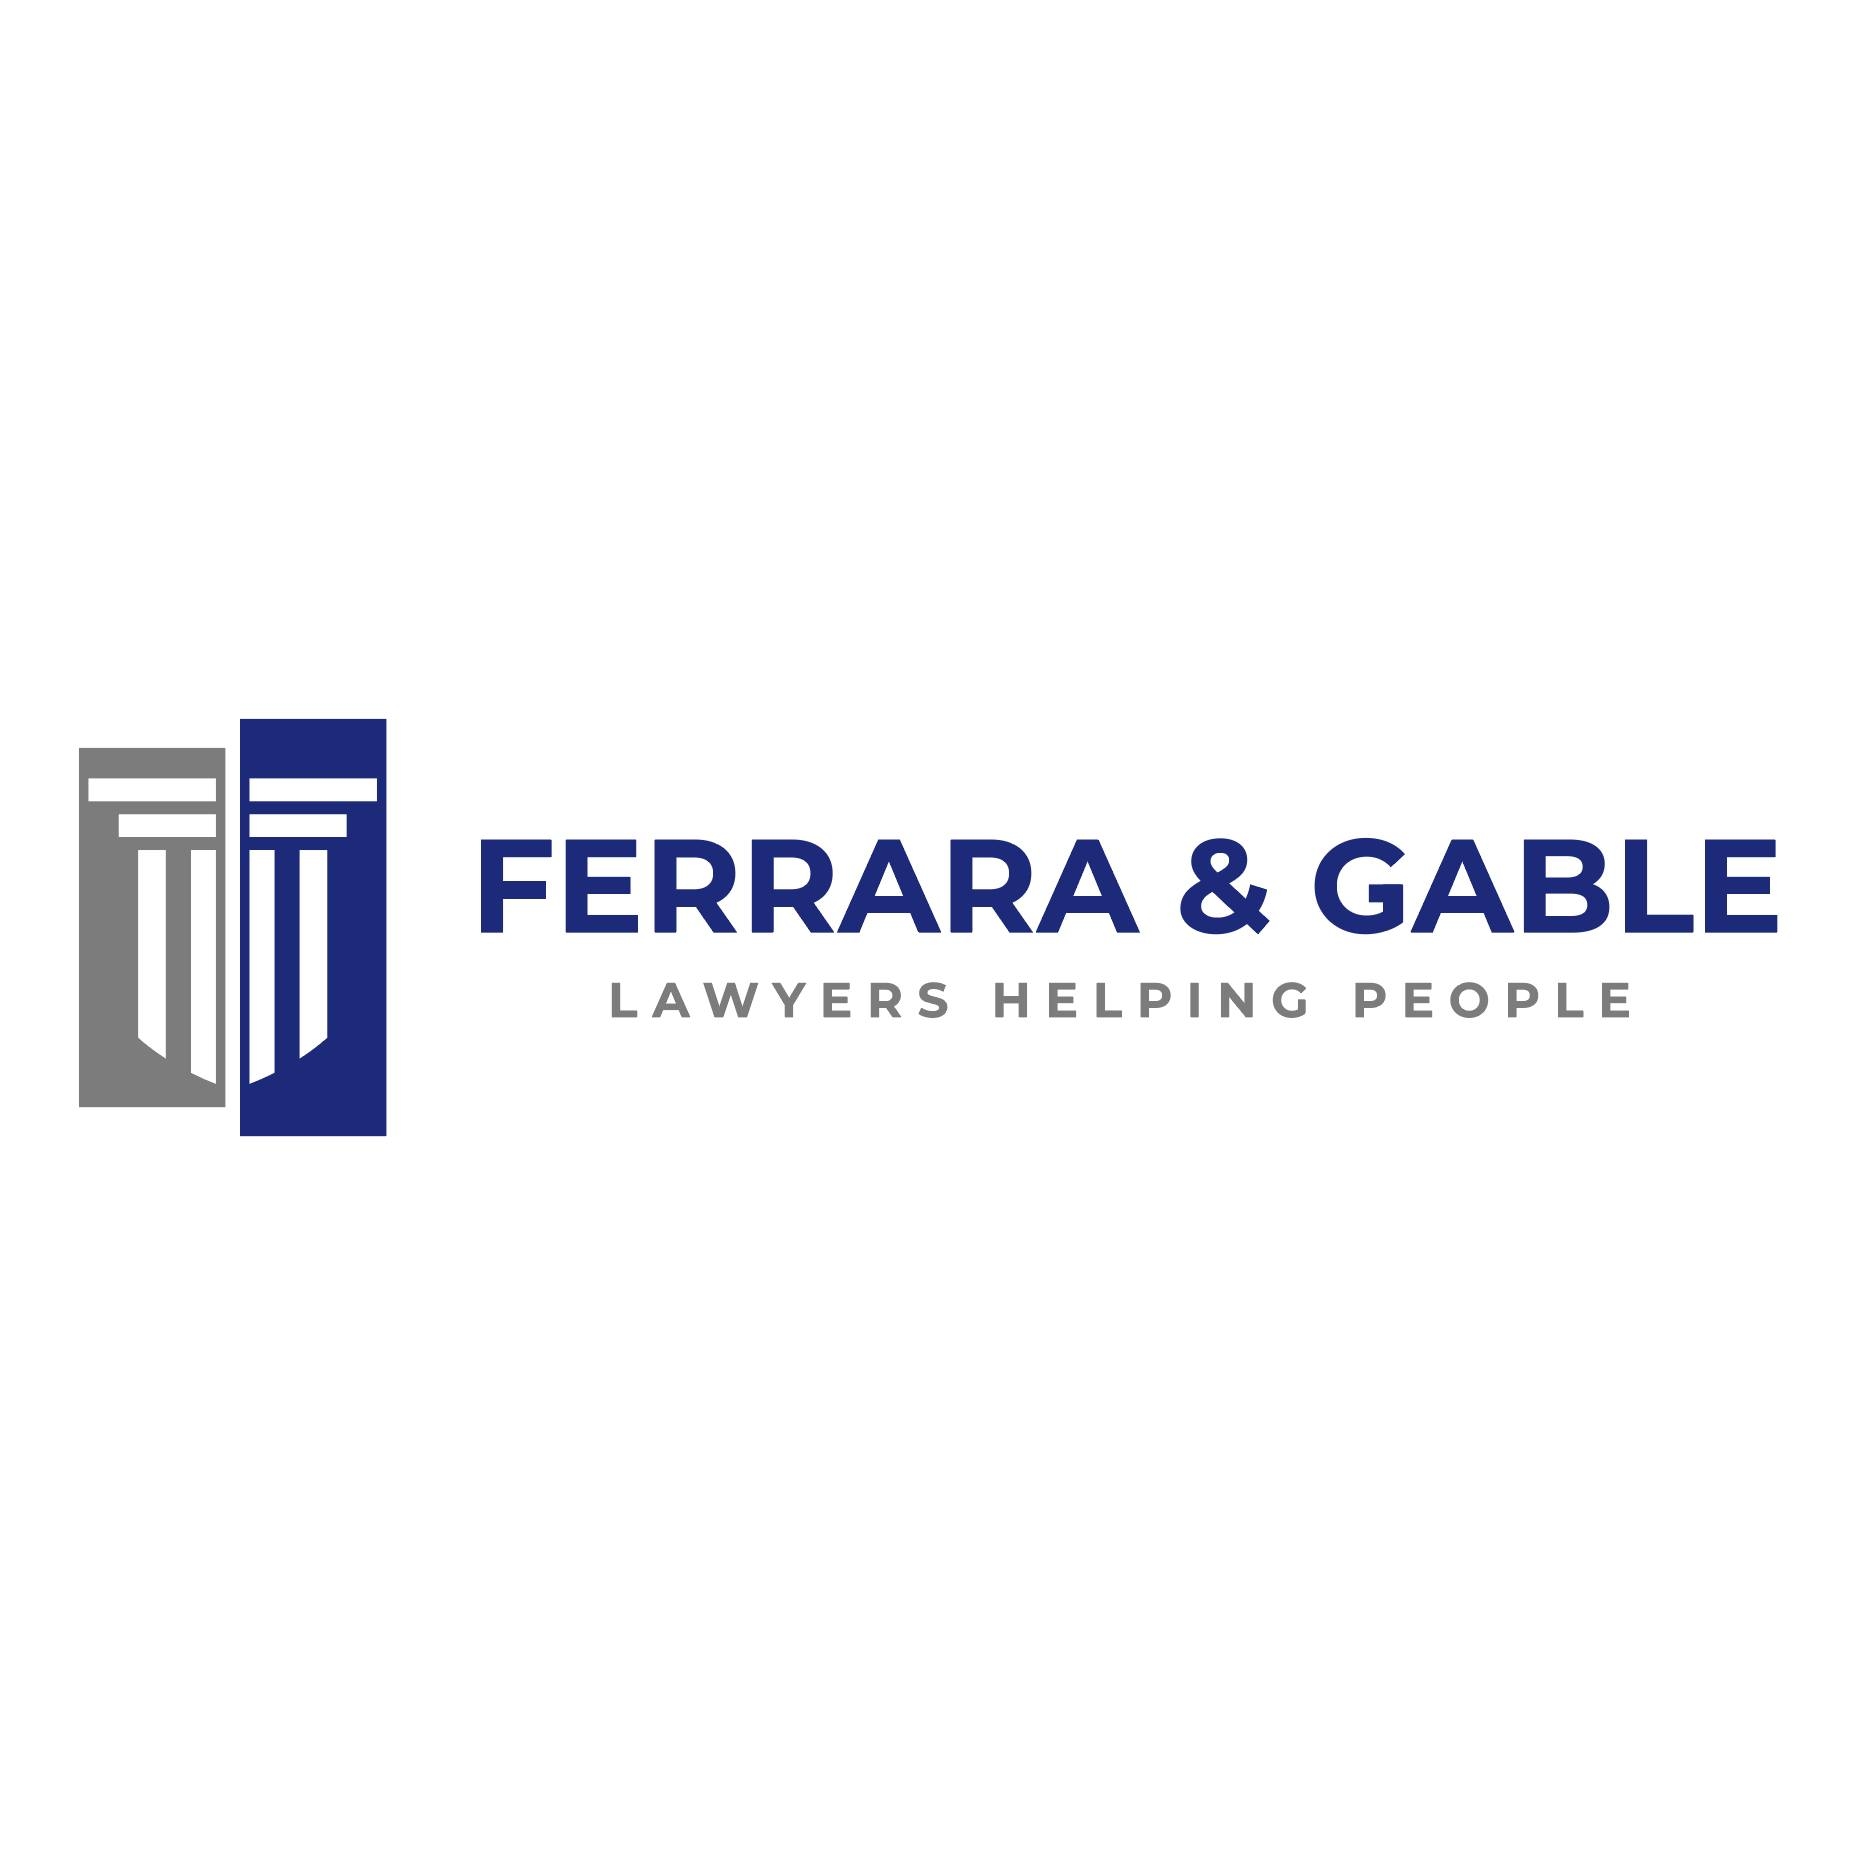 Ferrara & Gable